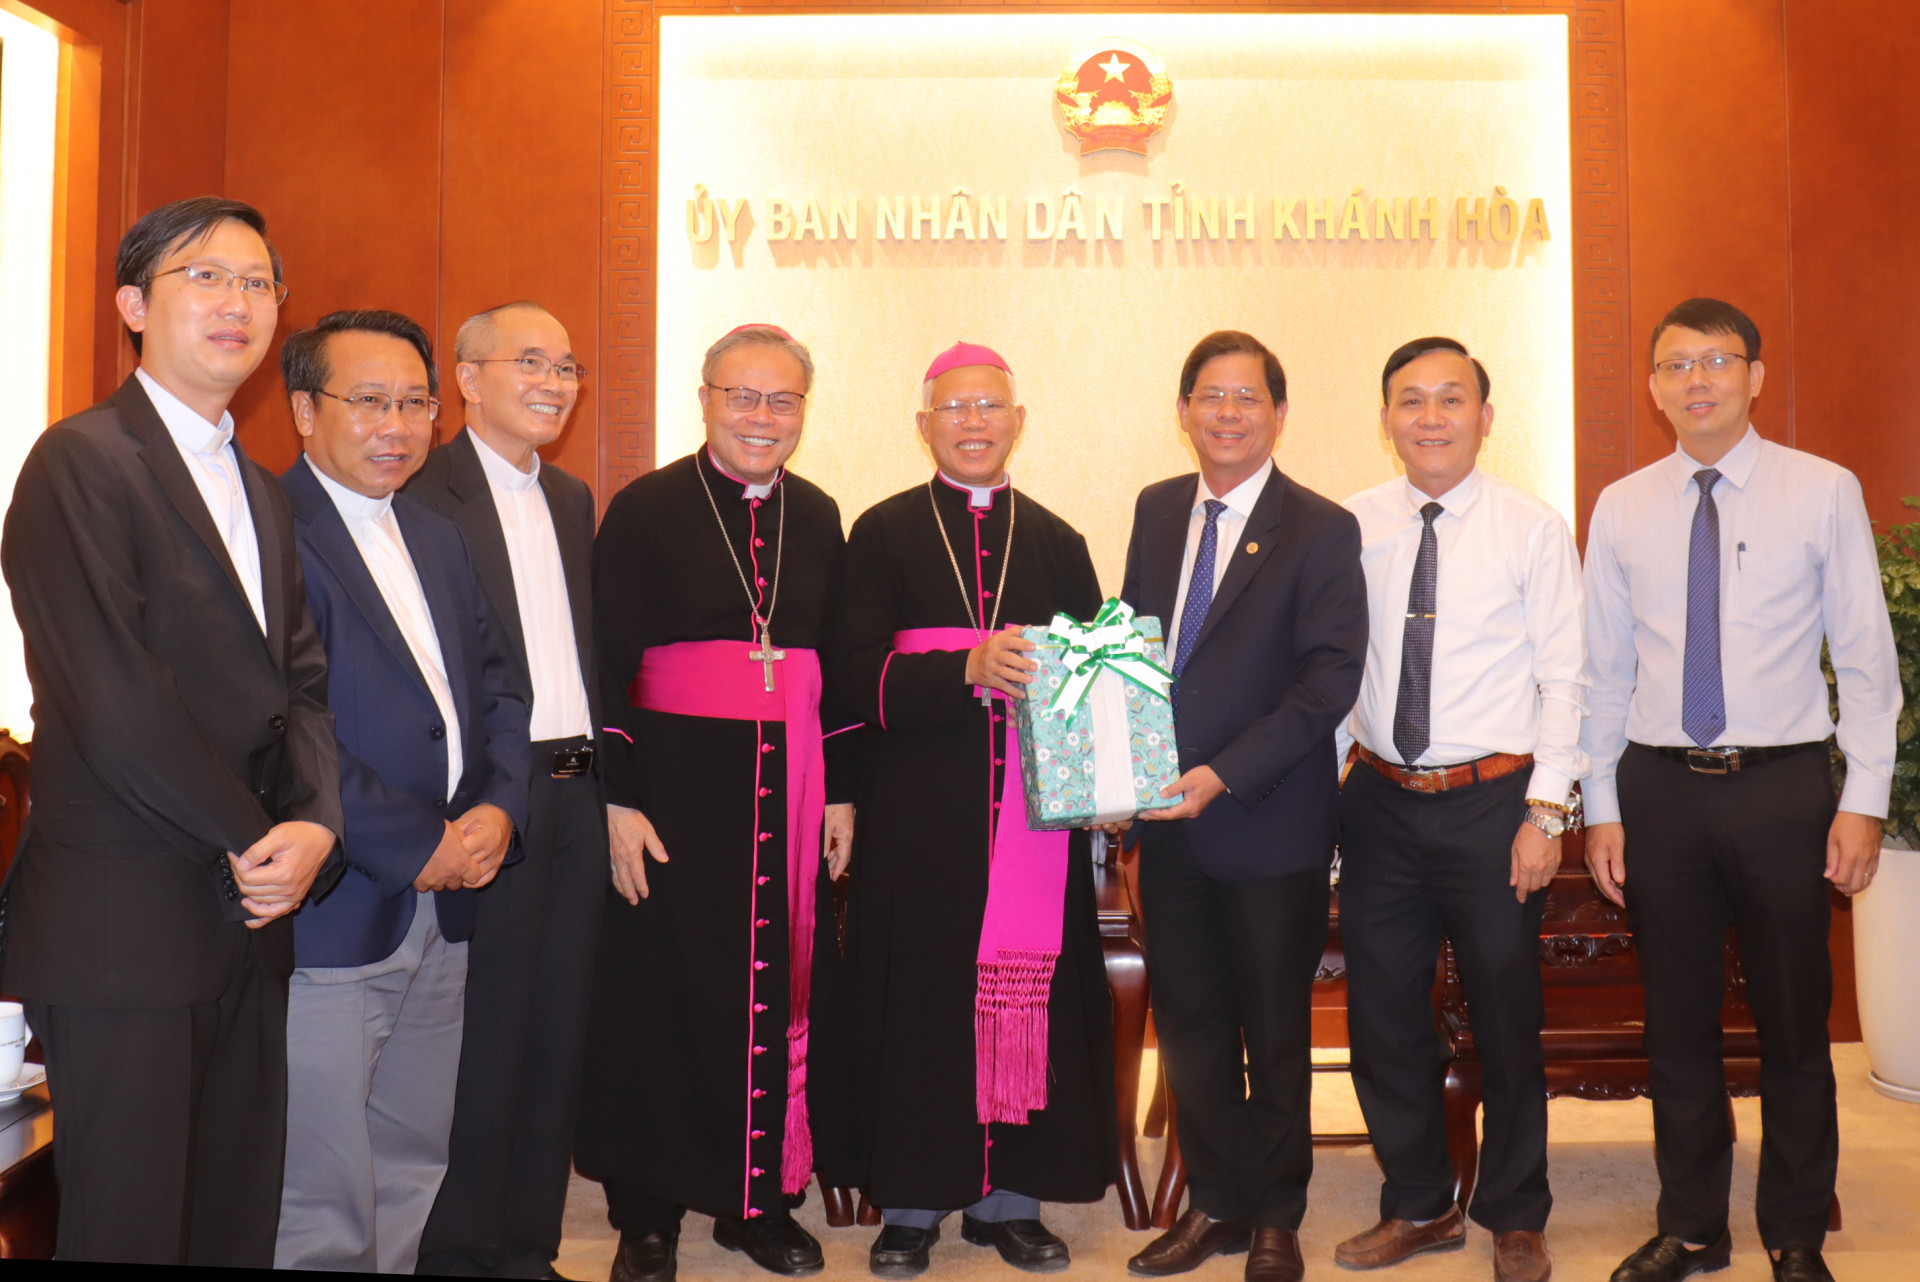 Đại diện Giáo phận Nha Trang trao quà cho lãnh đạo tỉnh Khánh Hòa.